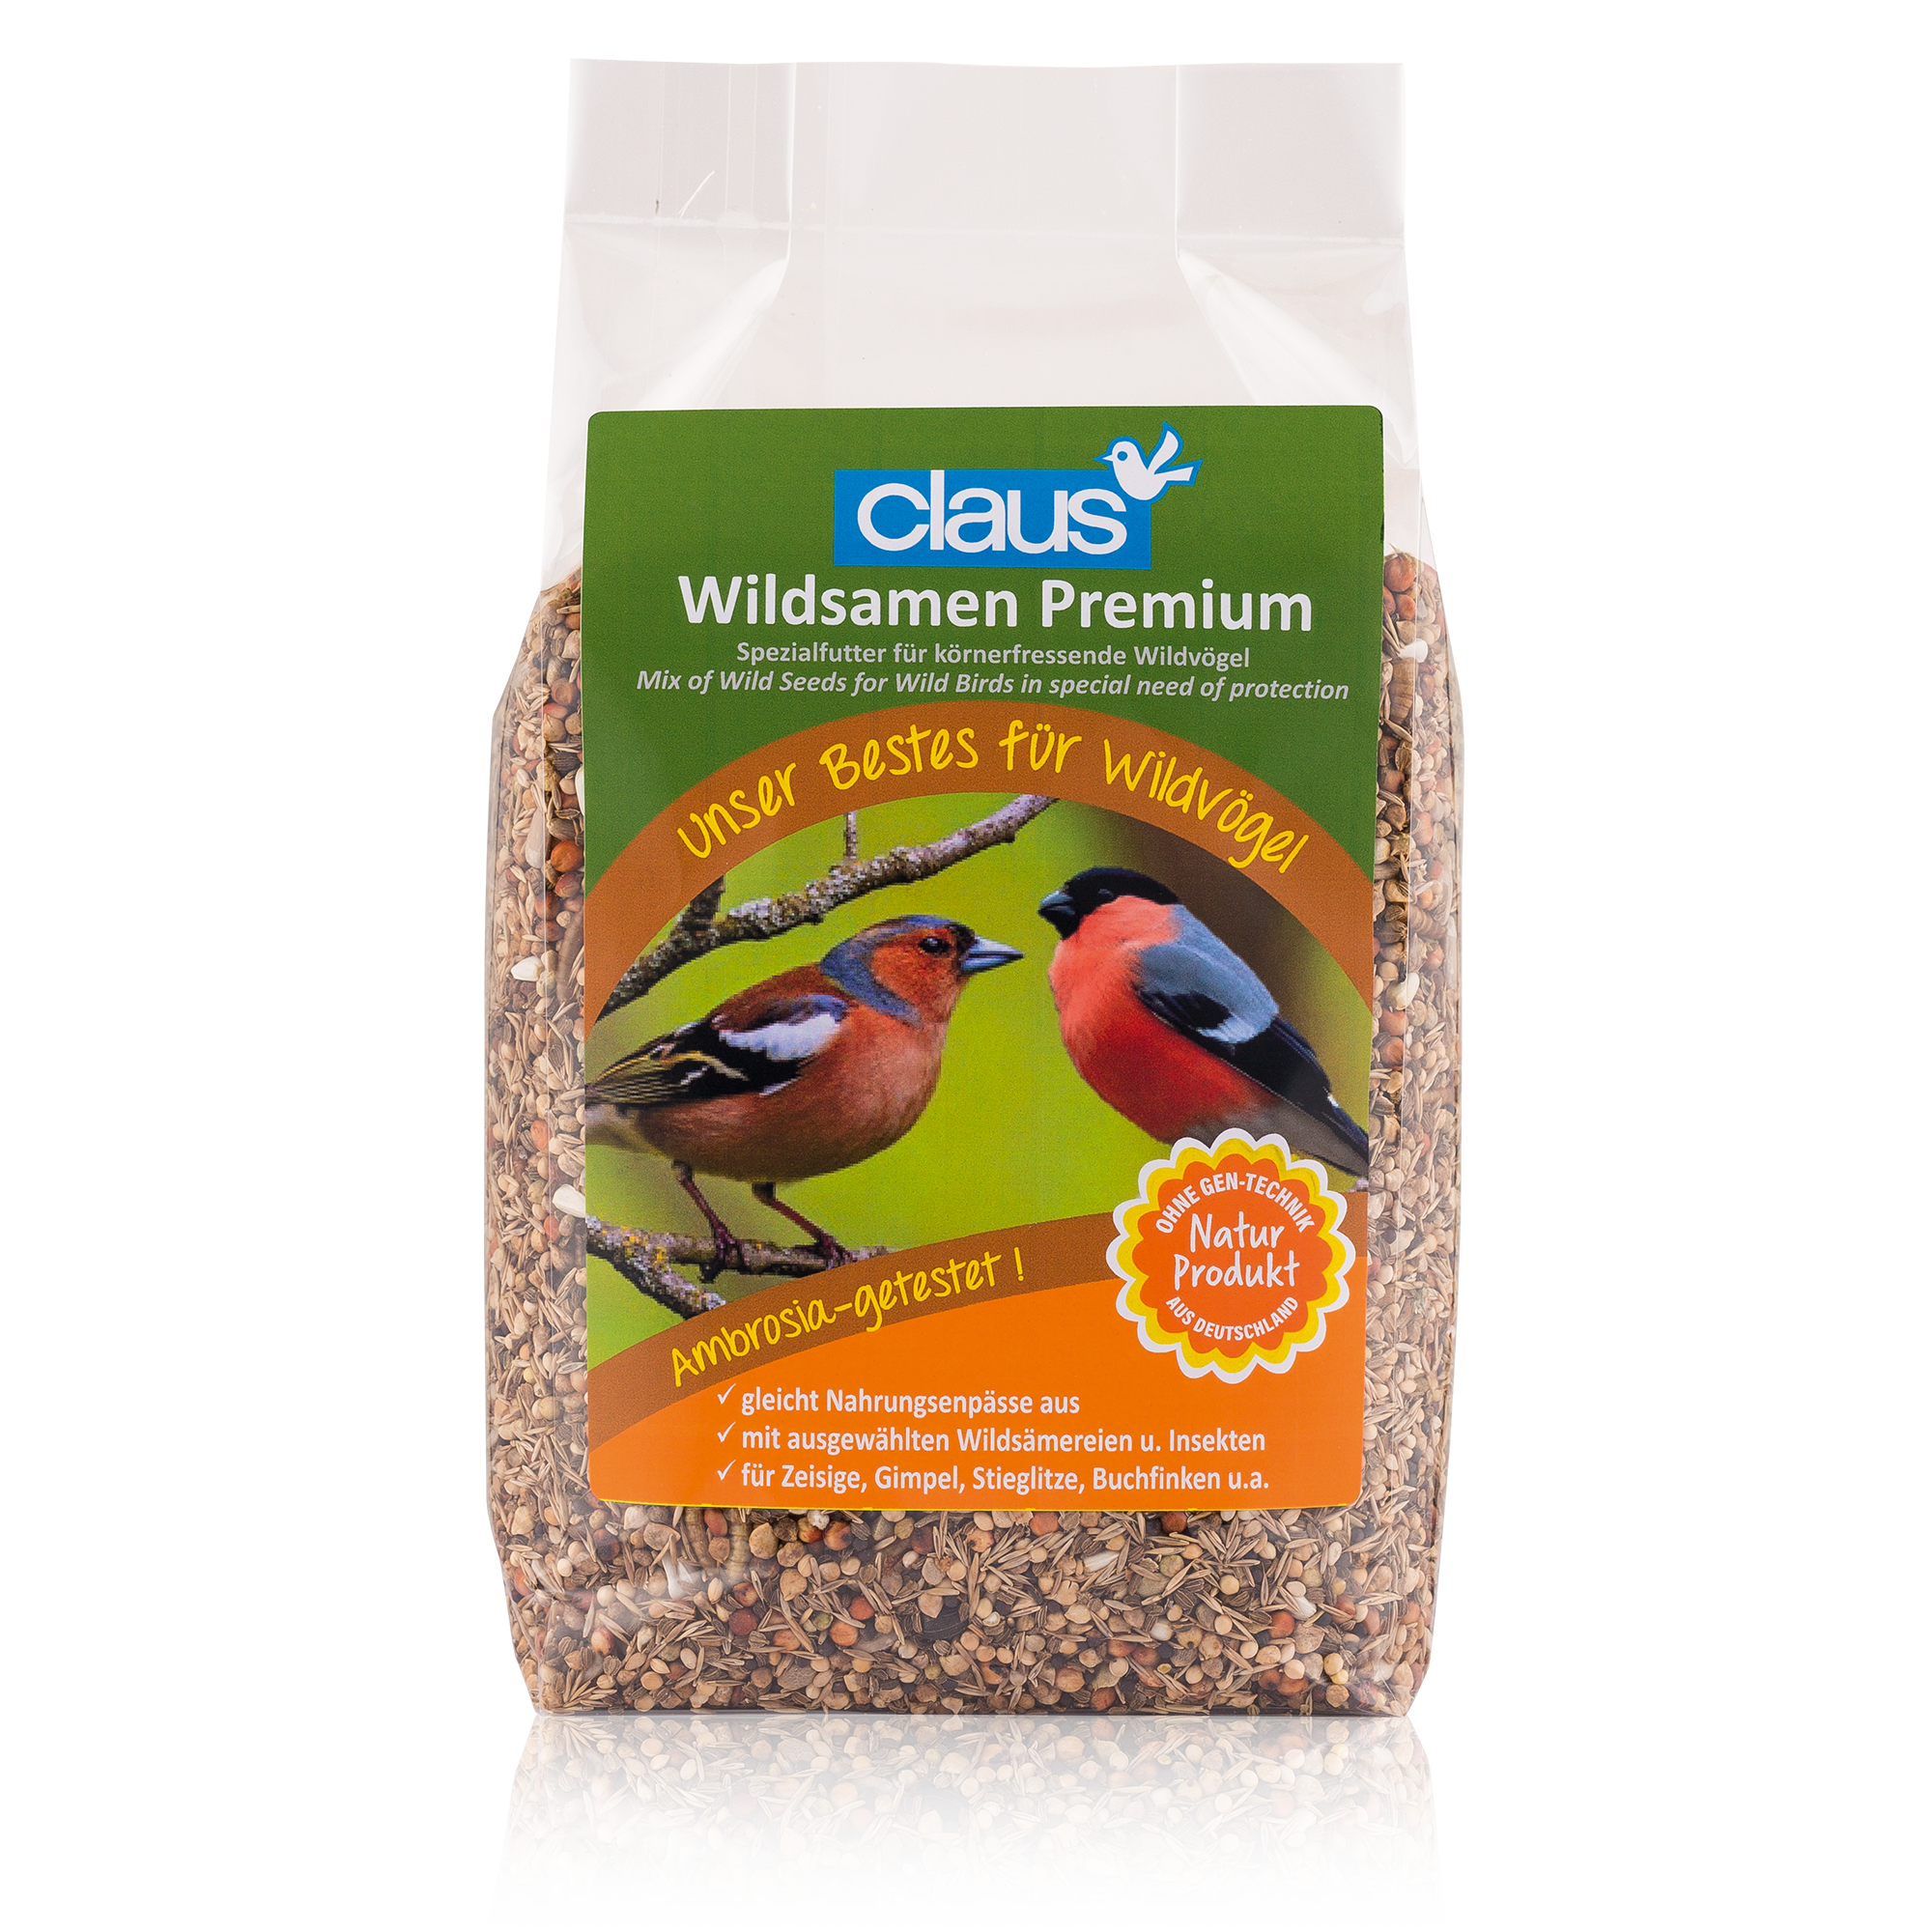 Wildsamen Premium 700 g + product picture